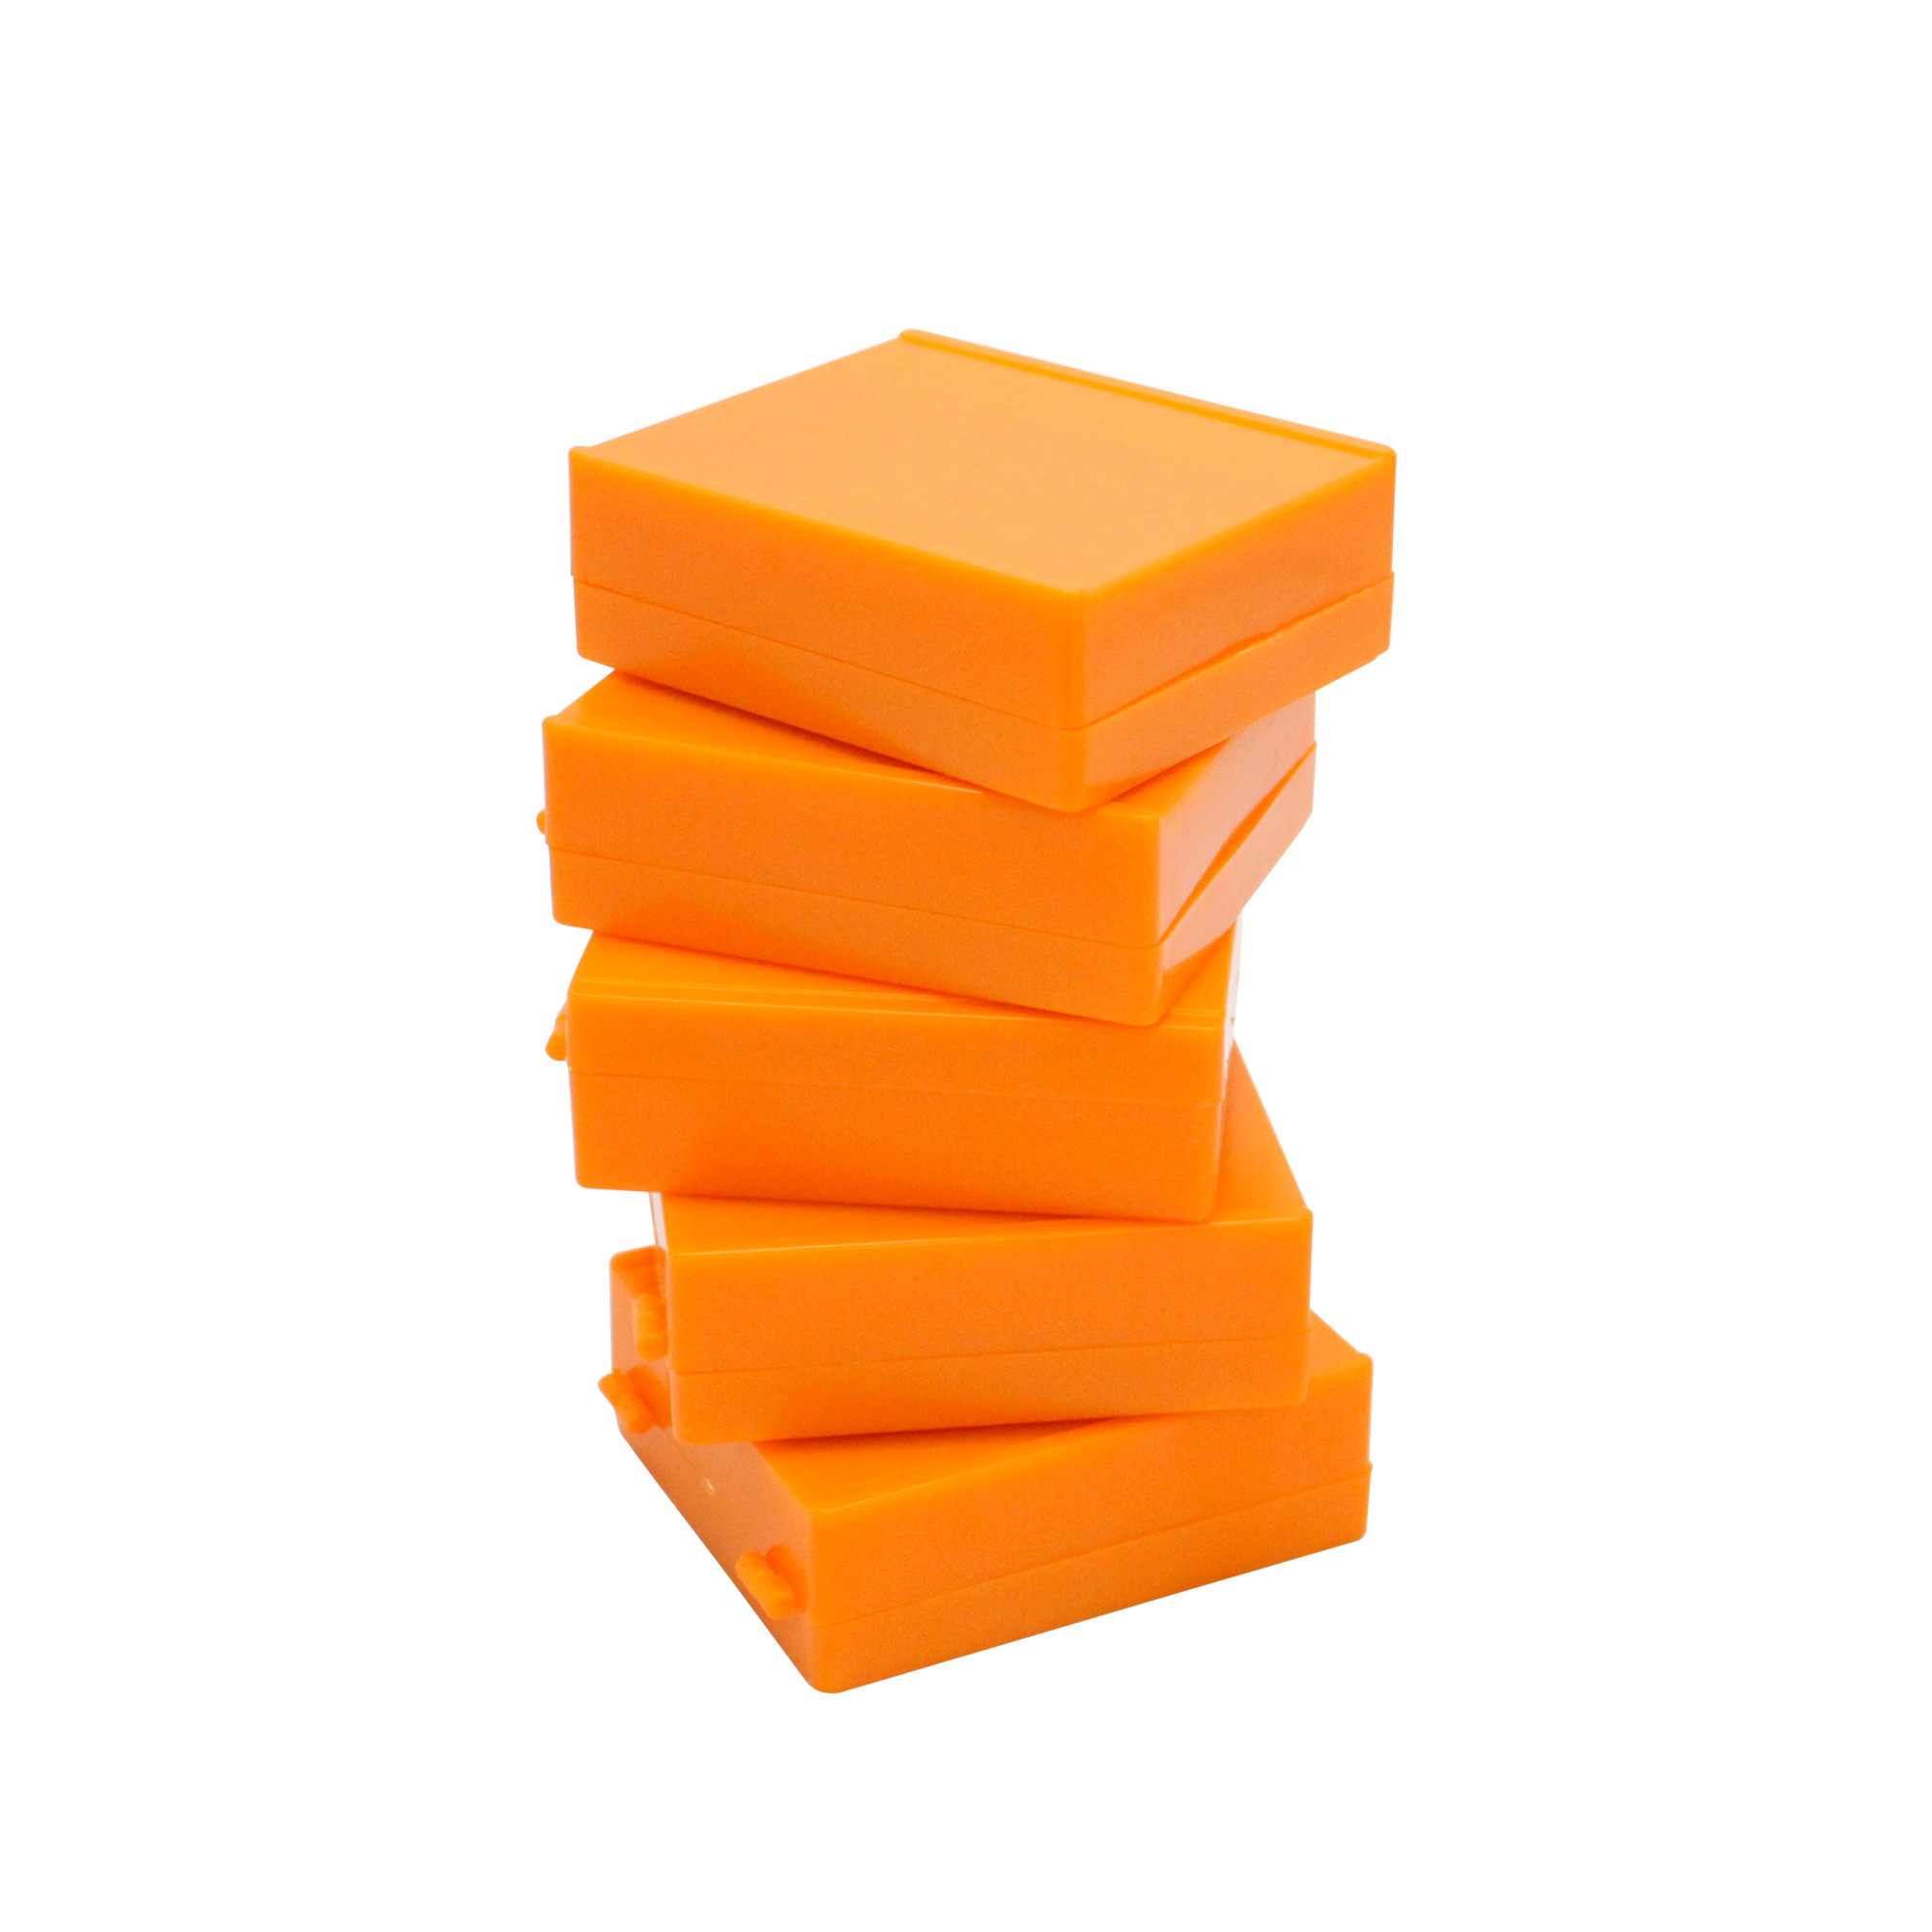 25片装载玻片存储盒,橘色